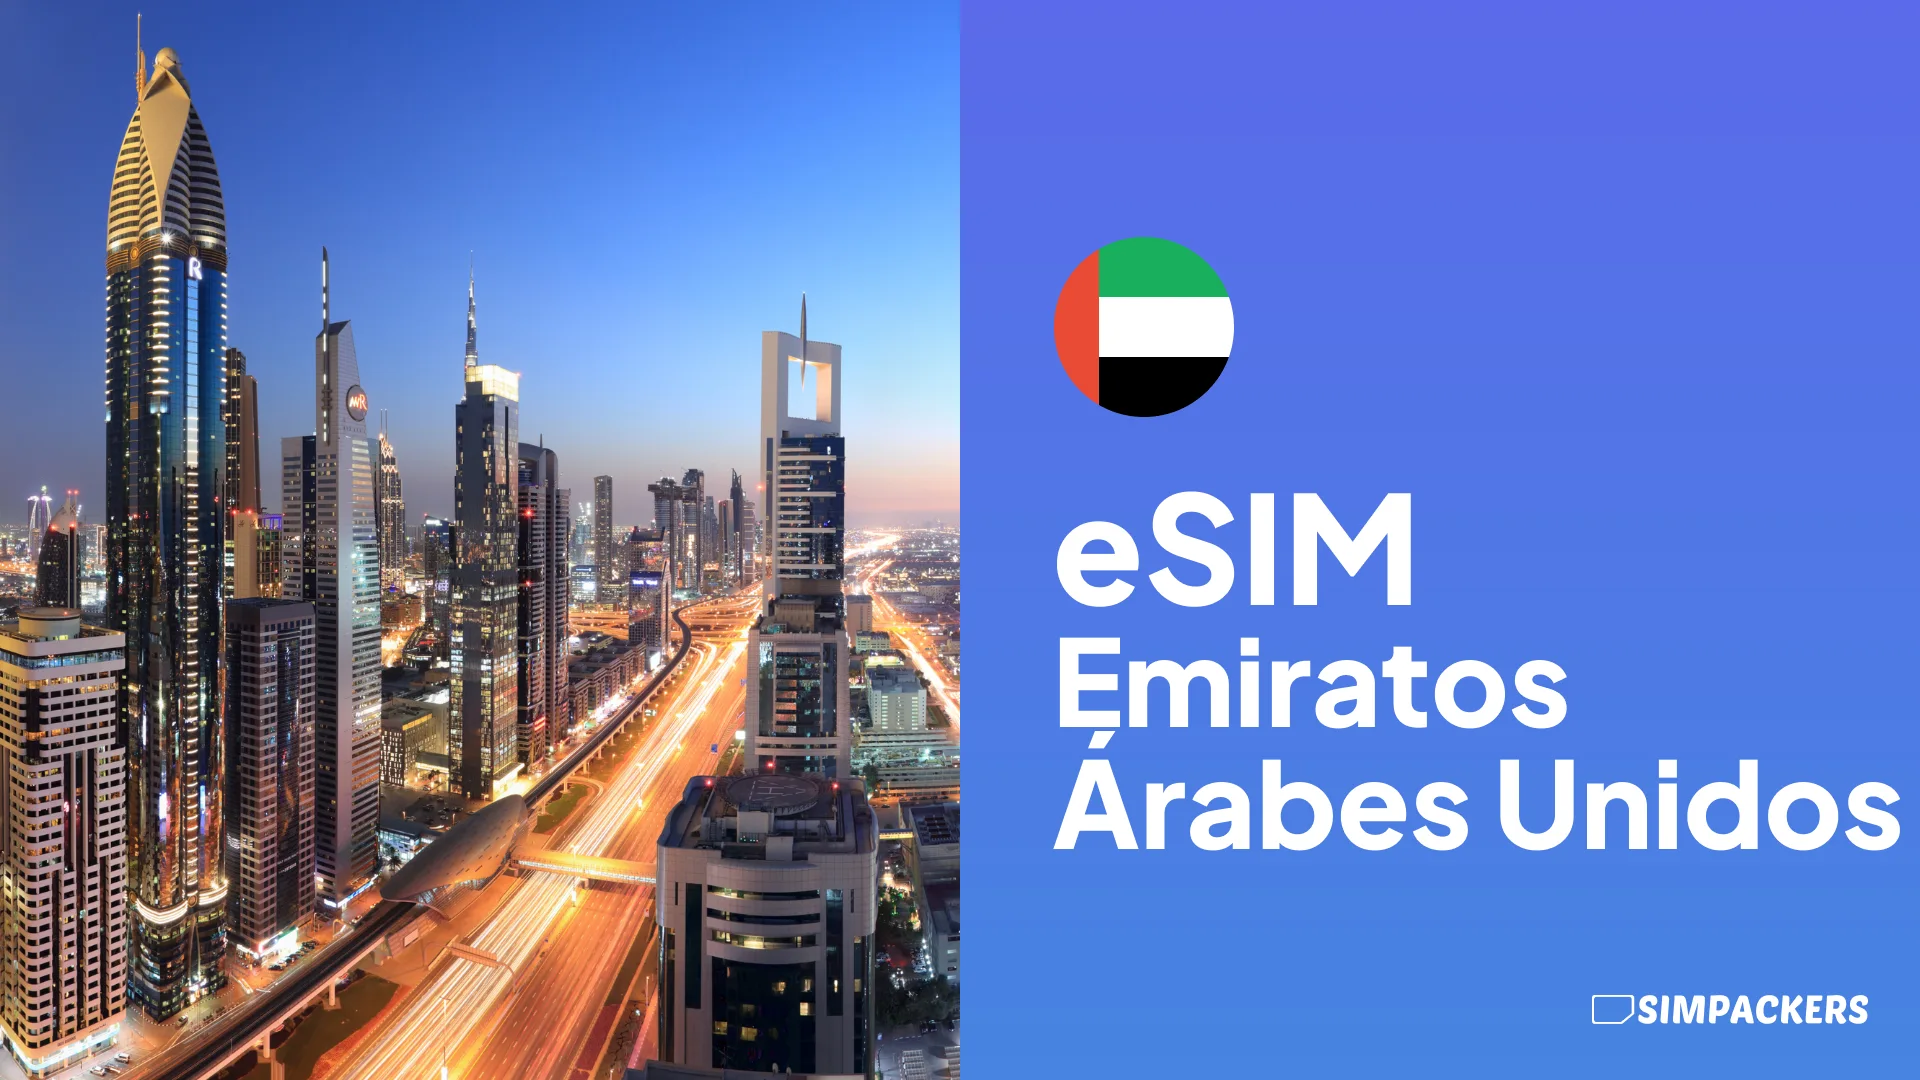 ES/FEATURED_IMAGES/esim-emiratos-arabes-unidos.webp